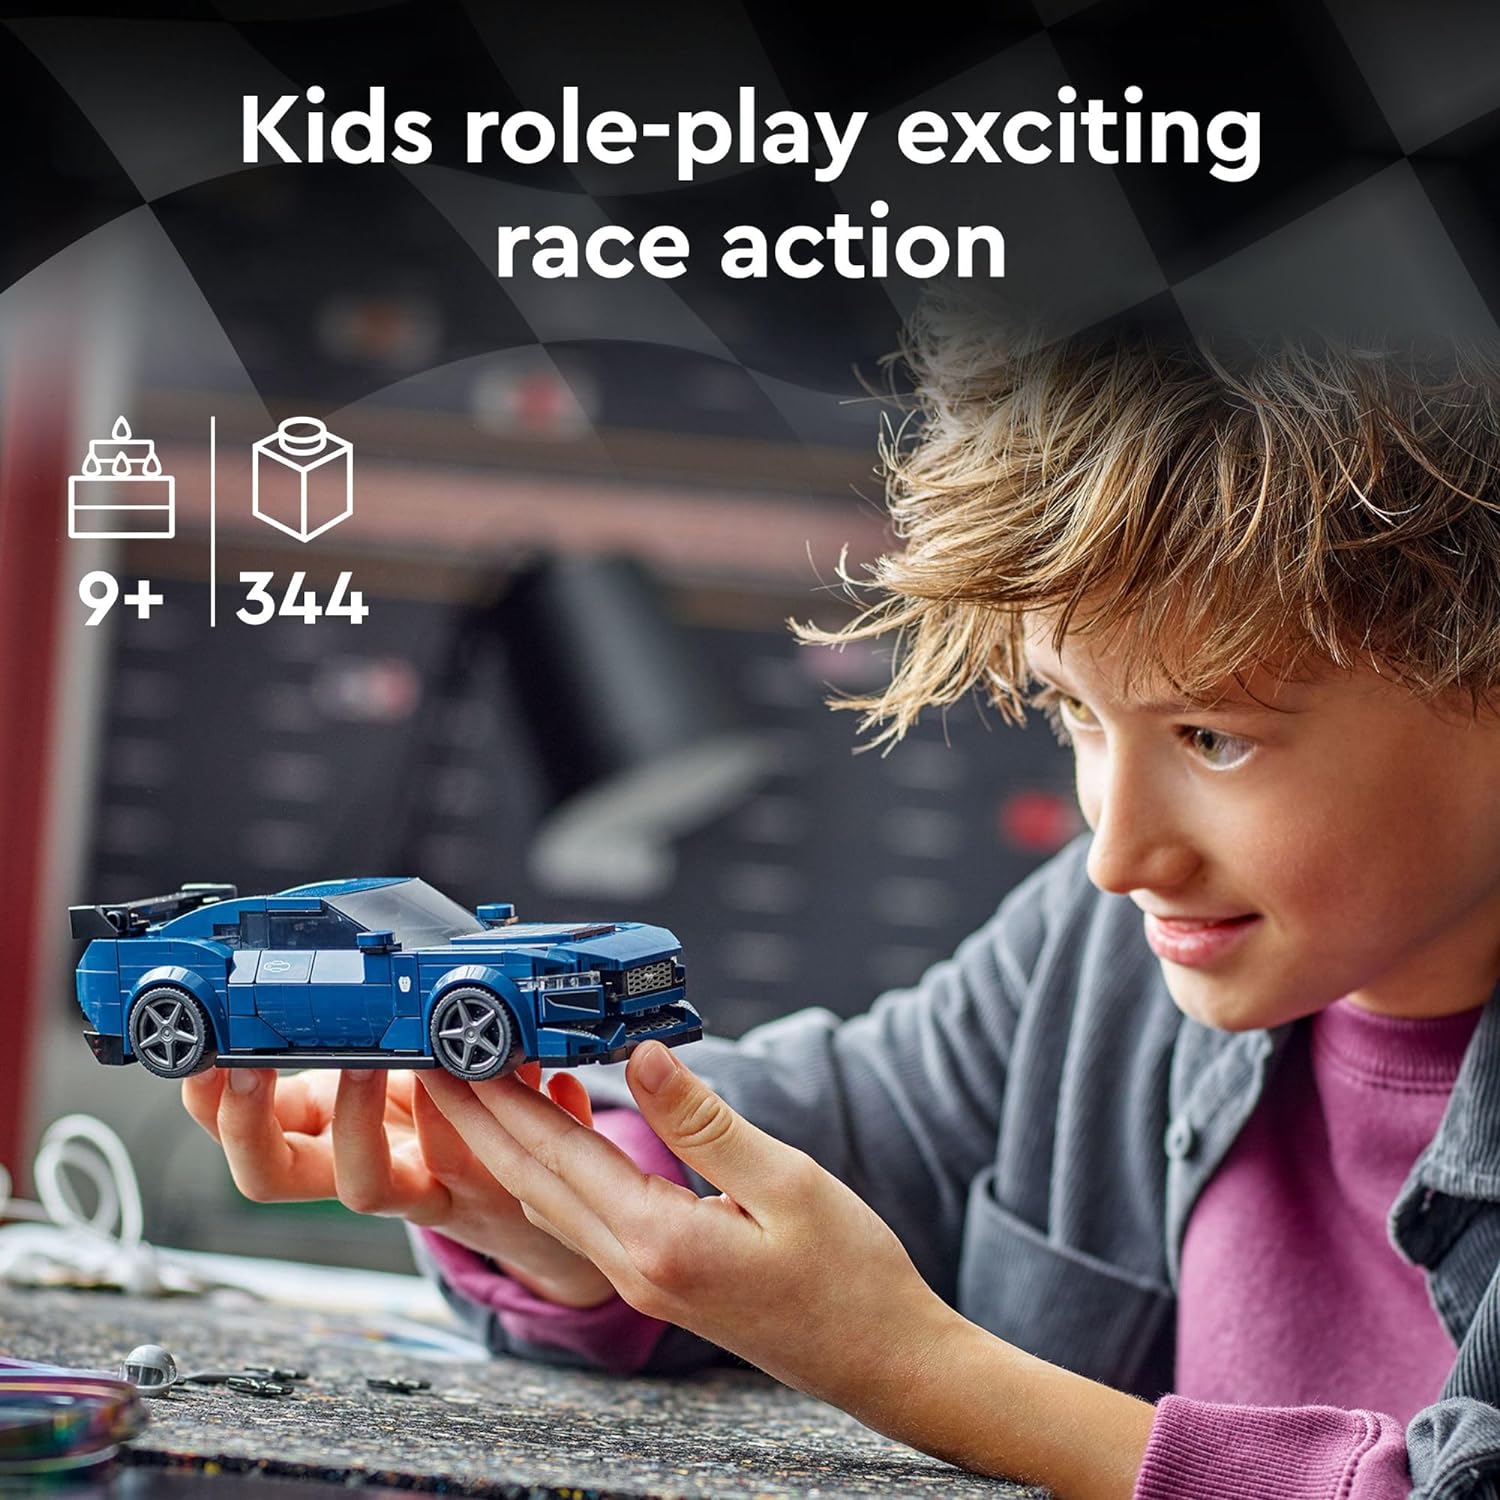 لعبة سيارة رياضية فورد موستانج دارك هورس من ليجو سبيد تشامبيونز 76920، لعبة فورد موستانج قابلة للبناء للأطفال، مجموعة نموذج سيارة لعبة زرقاء